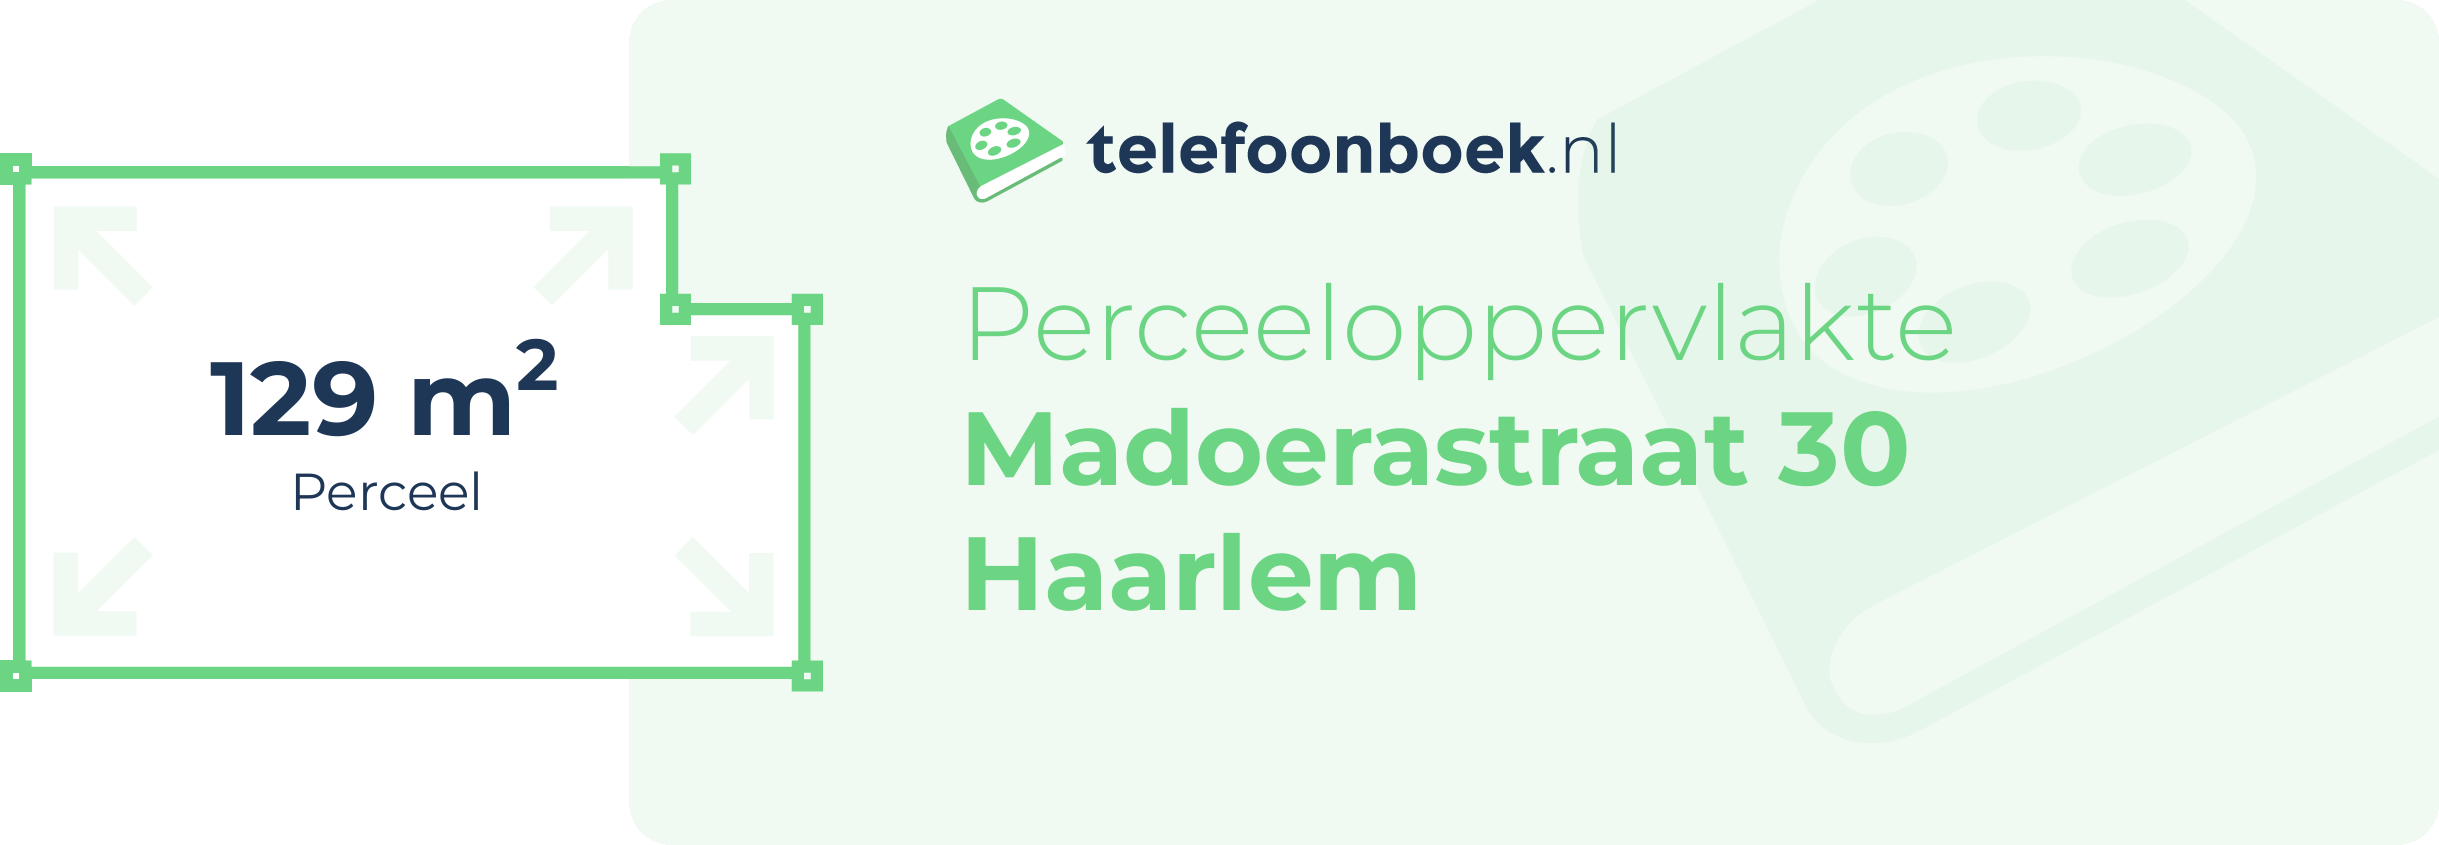 Perceeloppervlakte Madoerastraat 30 Haarlem